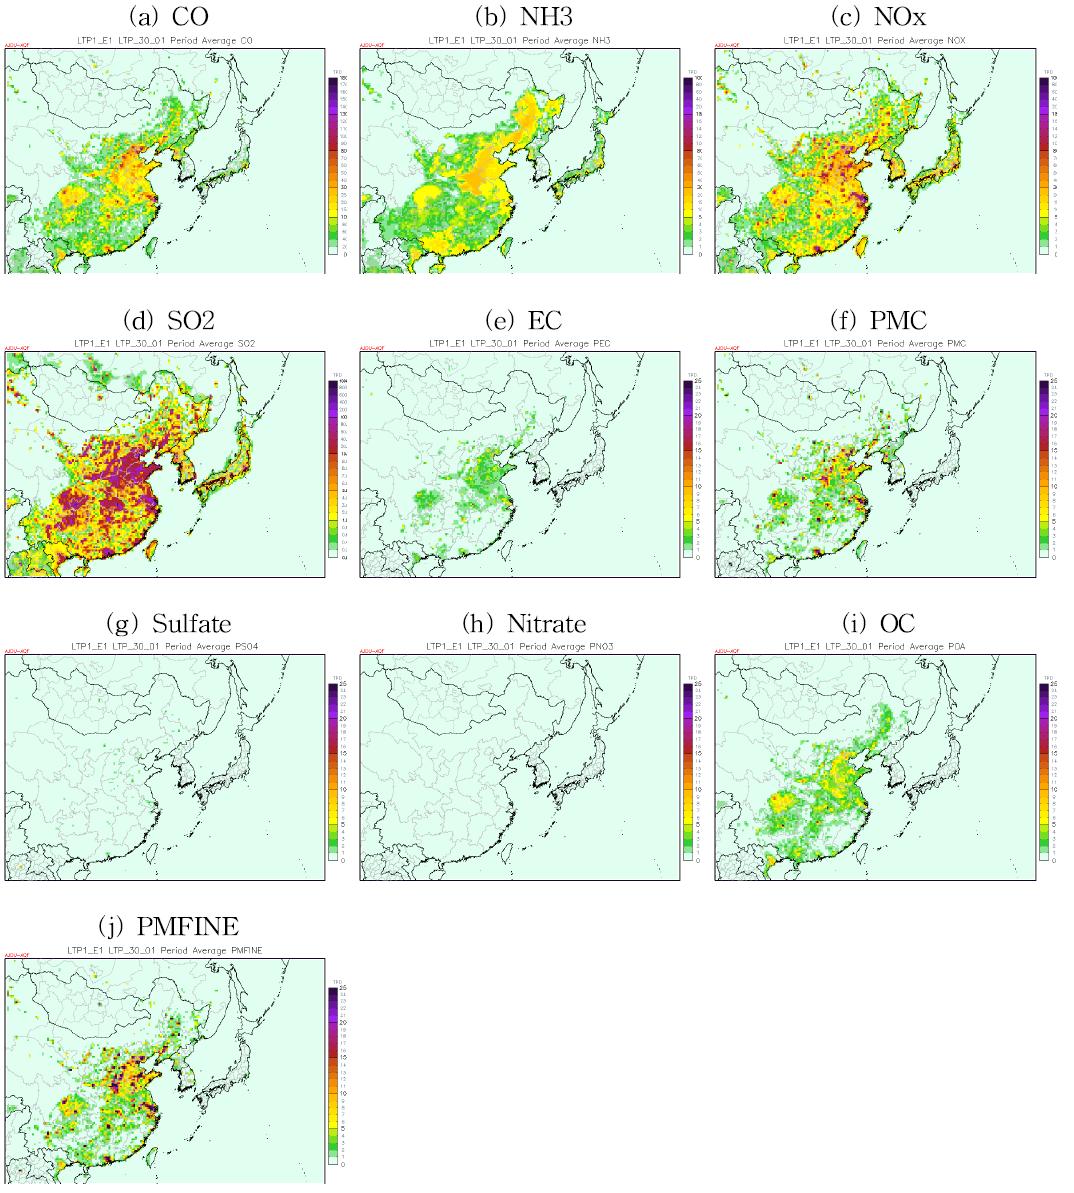 각 오염물질 별 2010년 기간평균(1, 4, 7, 10월) 배출량 공간분포